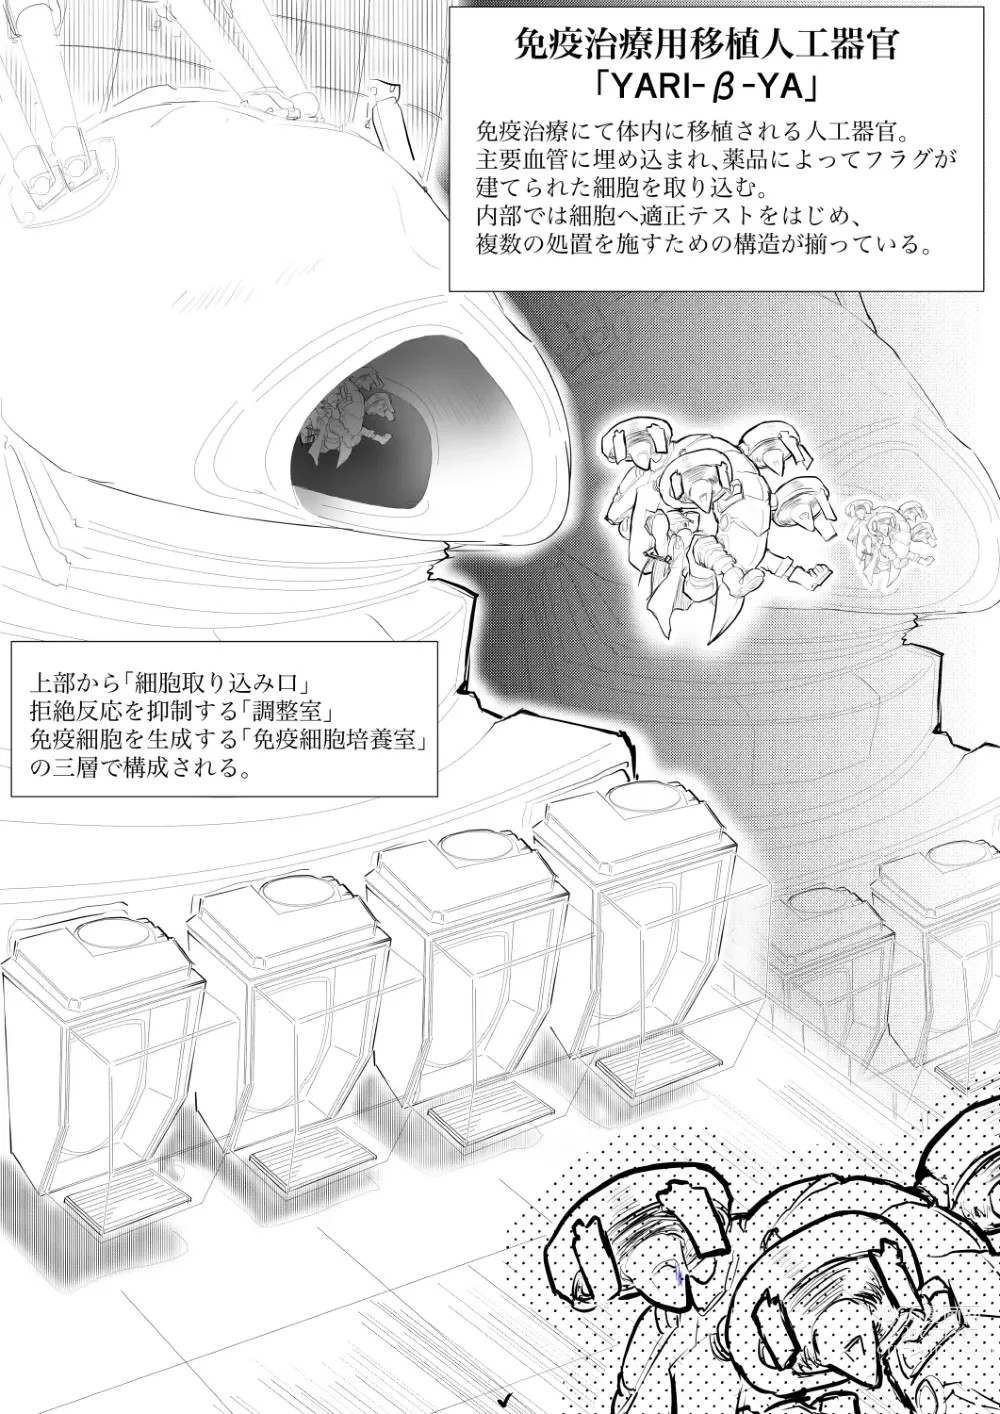 Page 4 of doujinshi Hakkekkyuu ga Shingata Chiryou ni Nabura Rerutsu!!